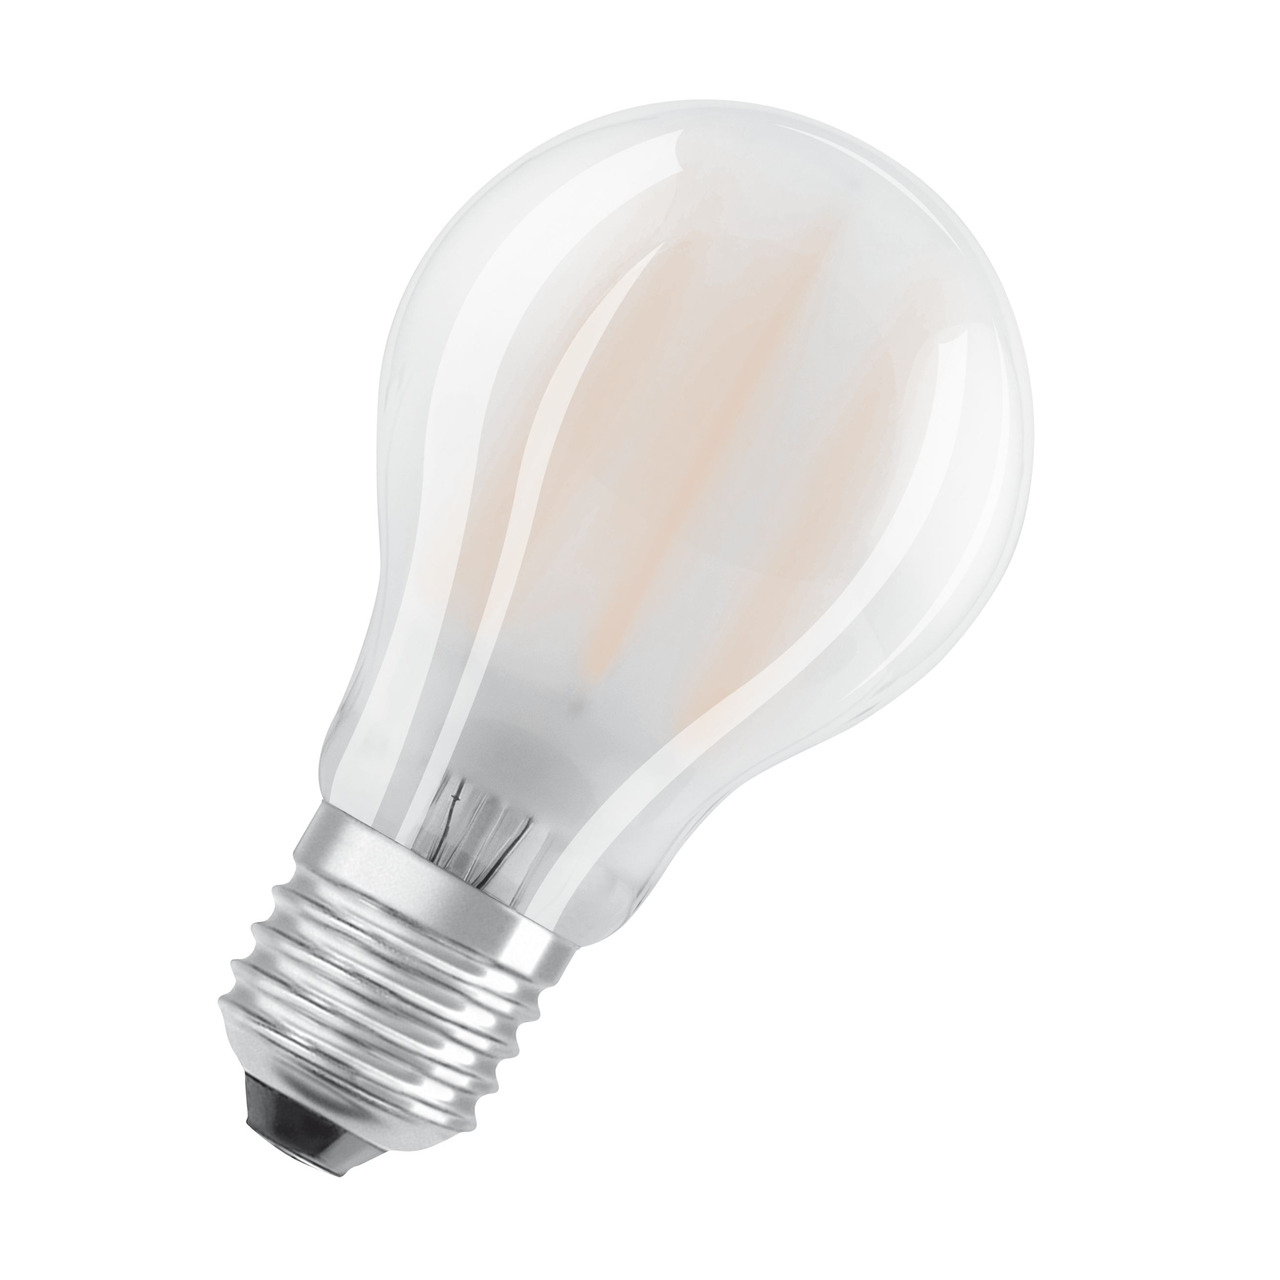 OSRAM 11-W-LED-Lampe A60- E27- 1521 lm- neutralweiss- matt unter Beleuchtung